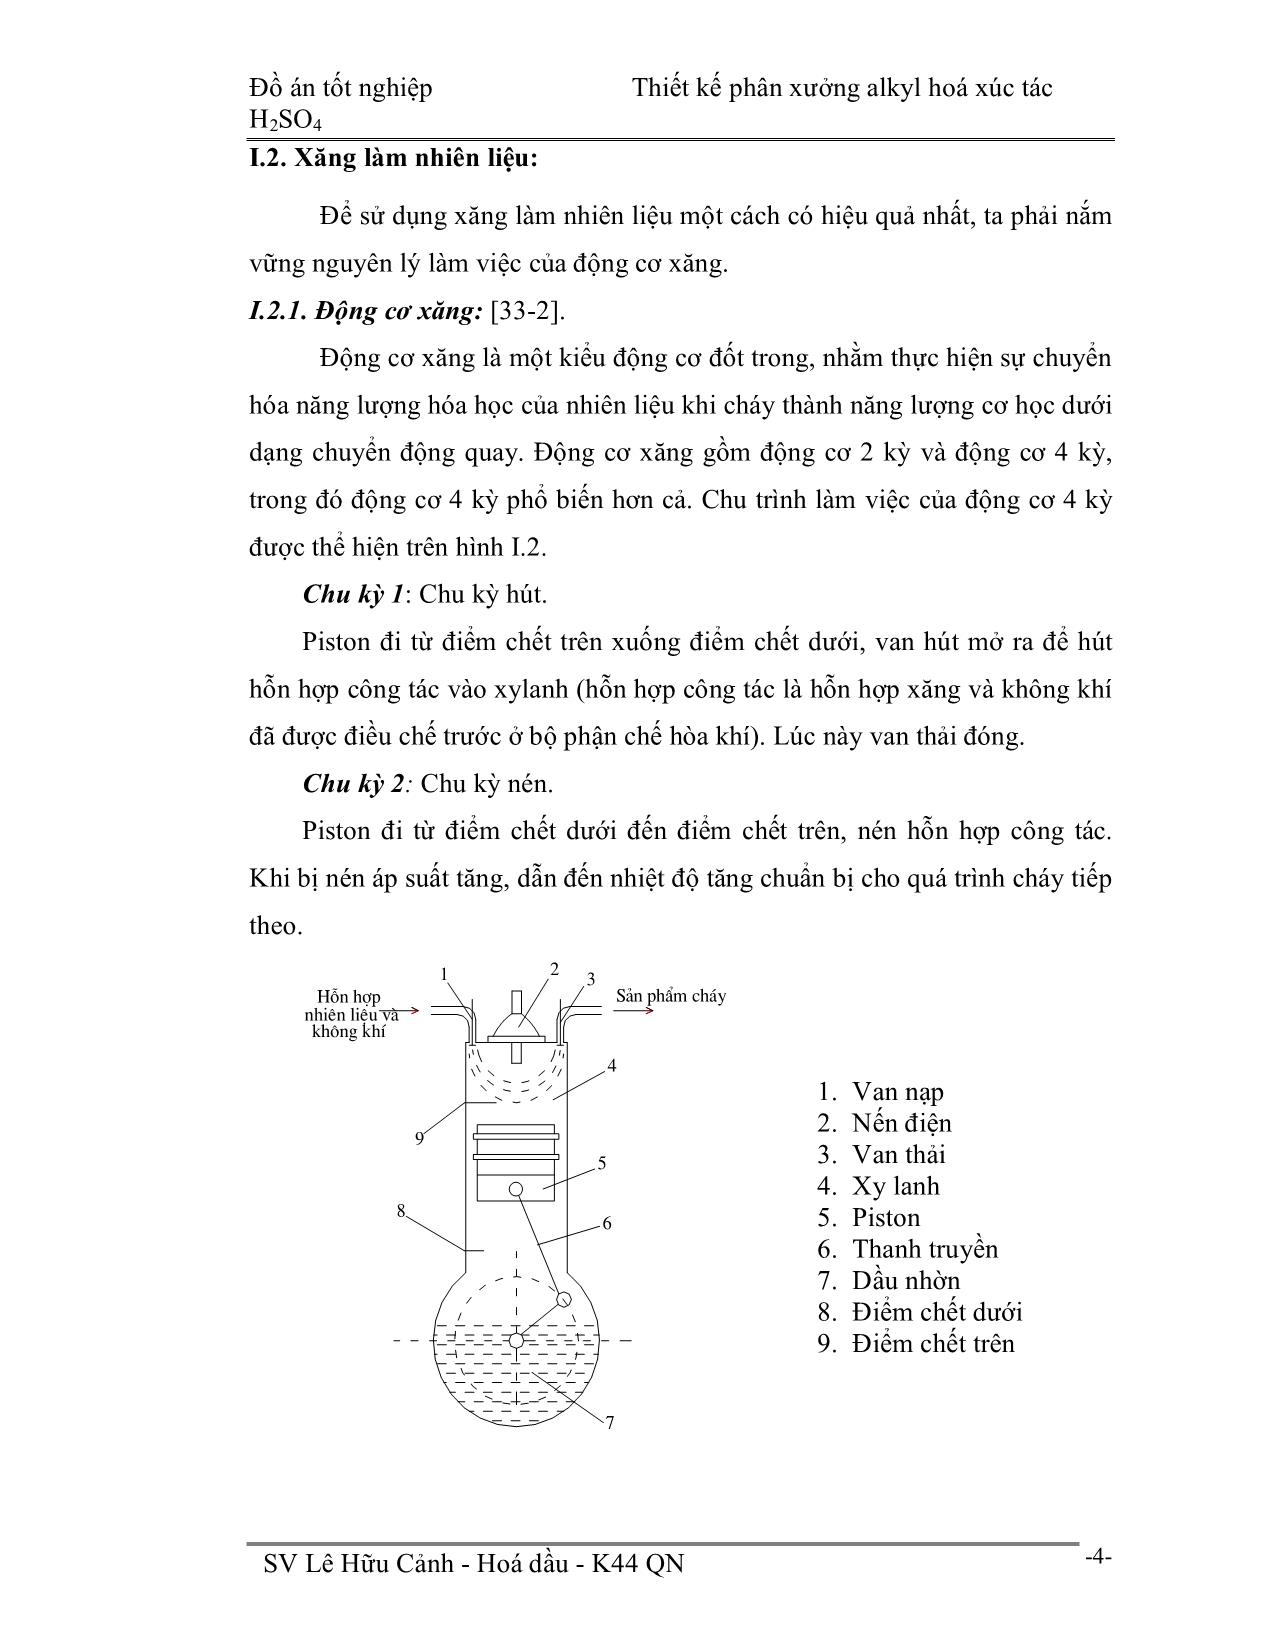 Đồ án Thiết kế phân xưởng alkyl hoá xúc tác H2SO4 trang 5